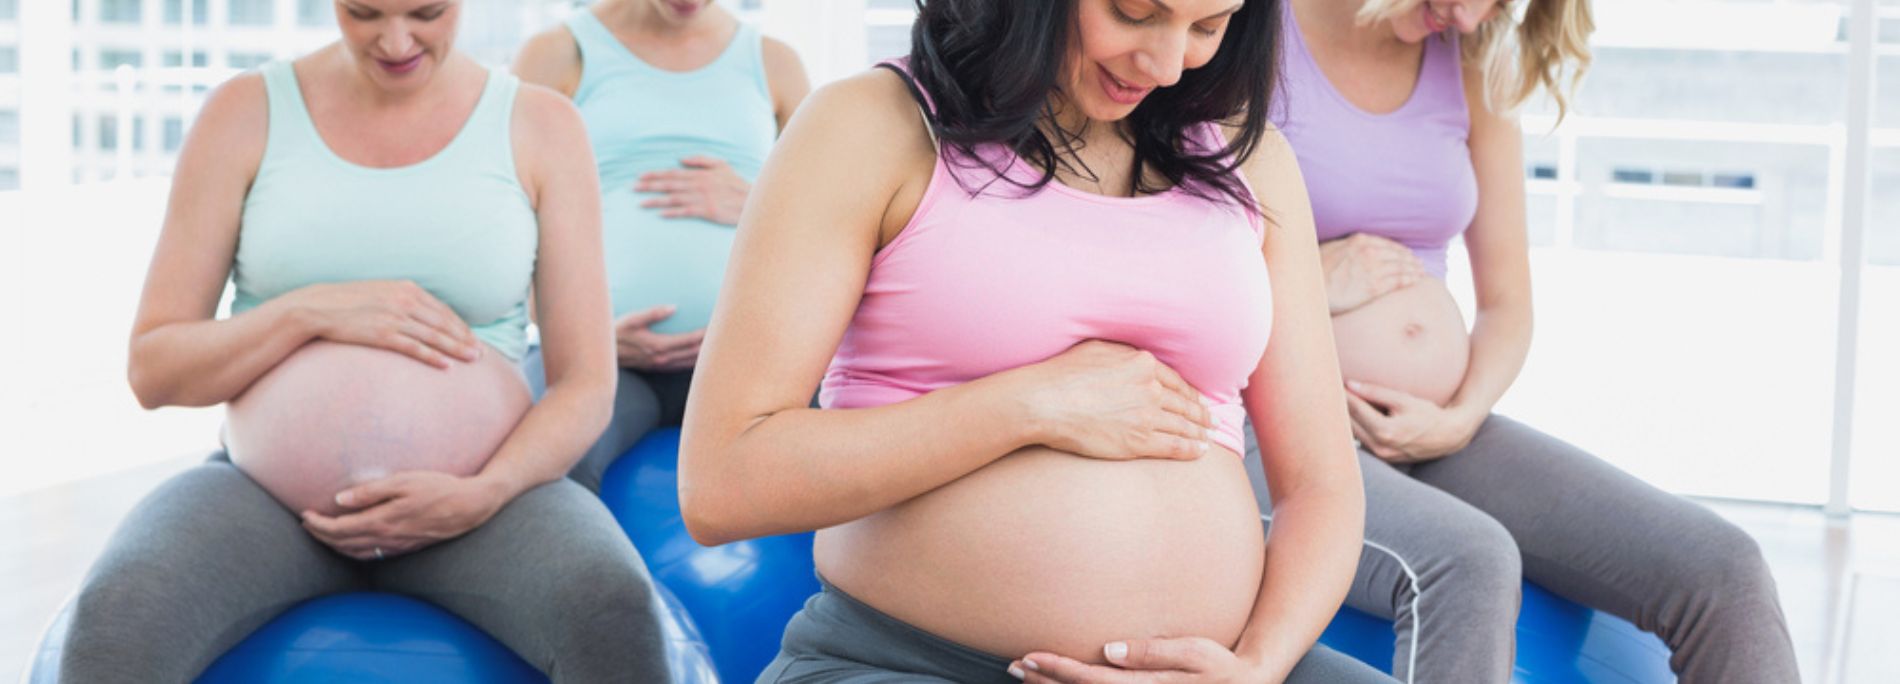 Qué beneficios tiene usar una pelota de pilates en el embarazo?